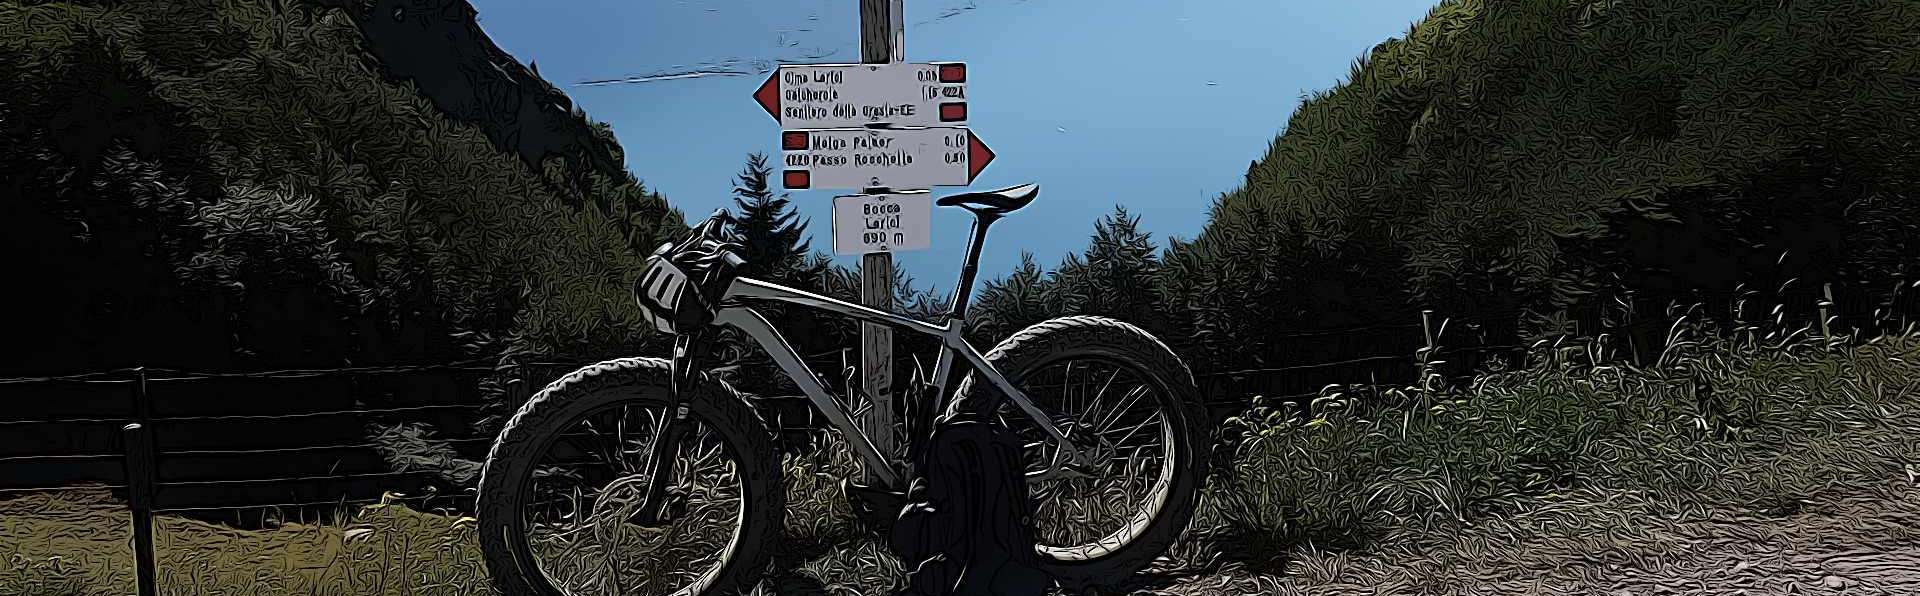 Bike sul Garda - Itinerari del Garda Trentino